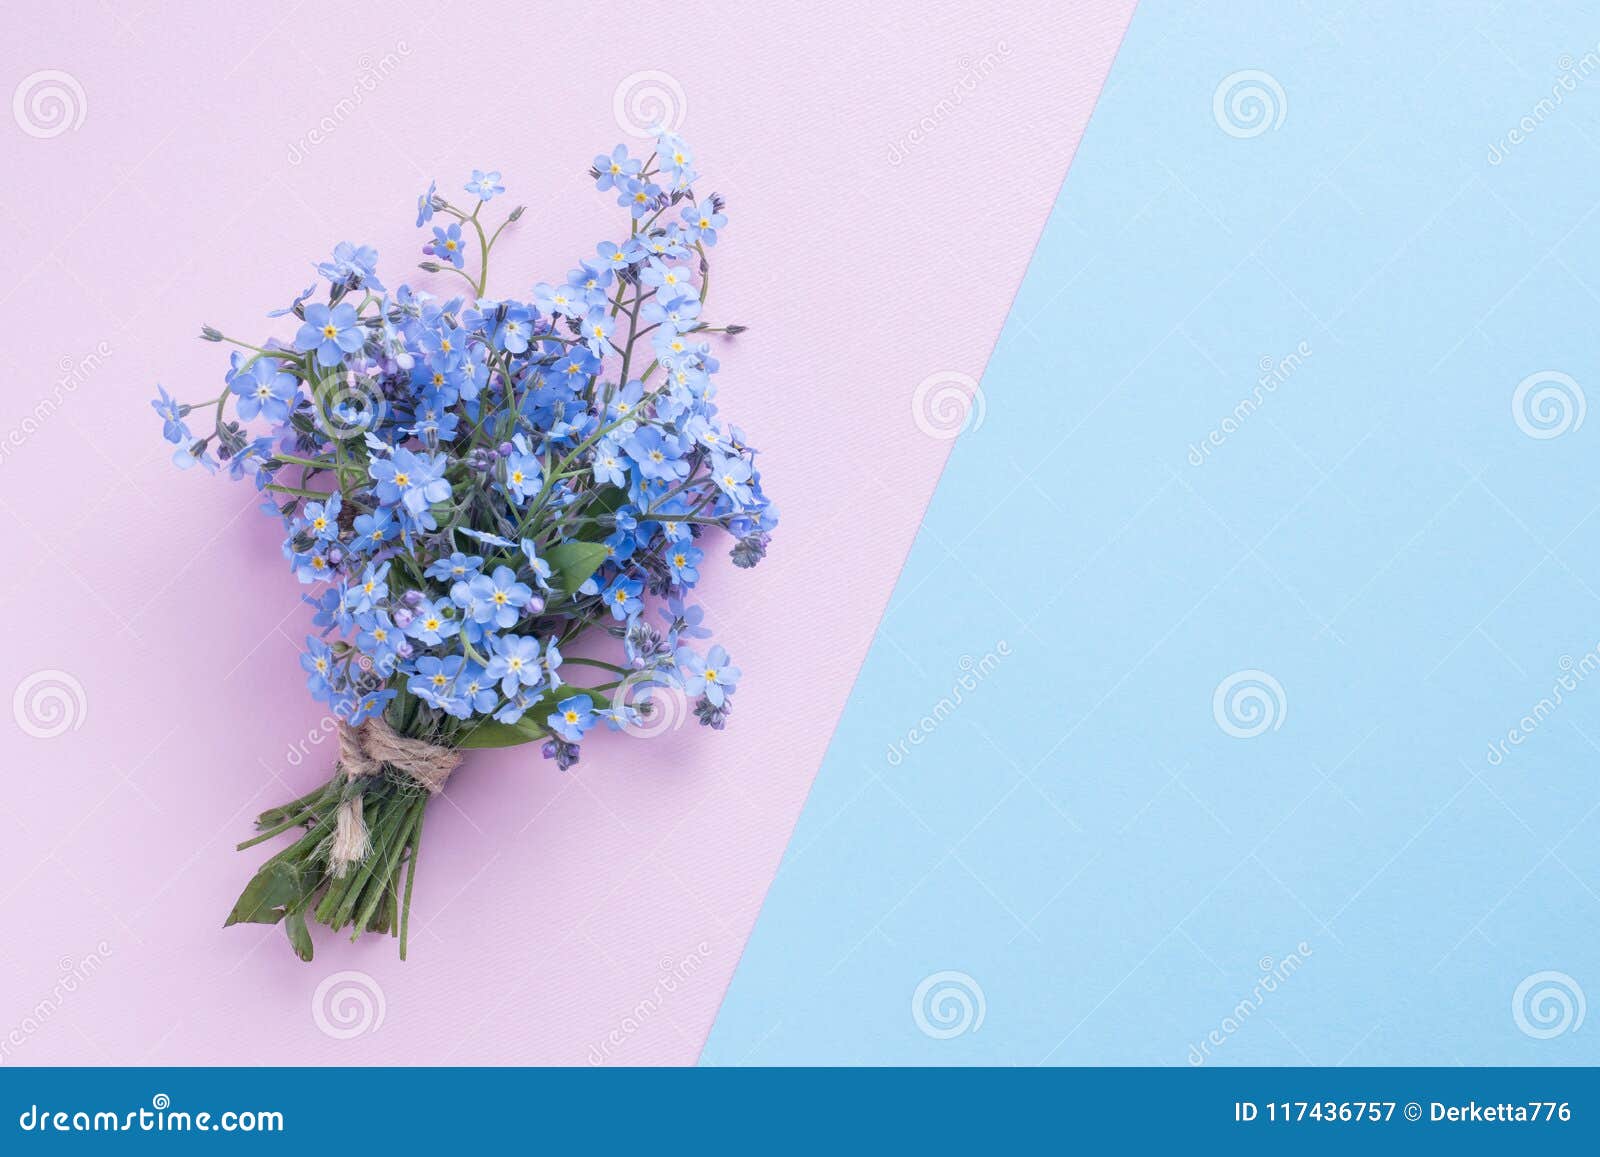 Olvídeme No Ramo De Las Flores En Fondo En Colores Pastel Azul Y Rosado  Imagen de archivo - Imagen de delicado, flora: 117436757